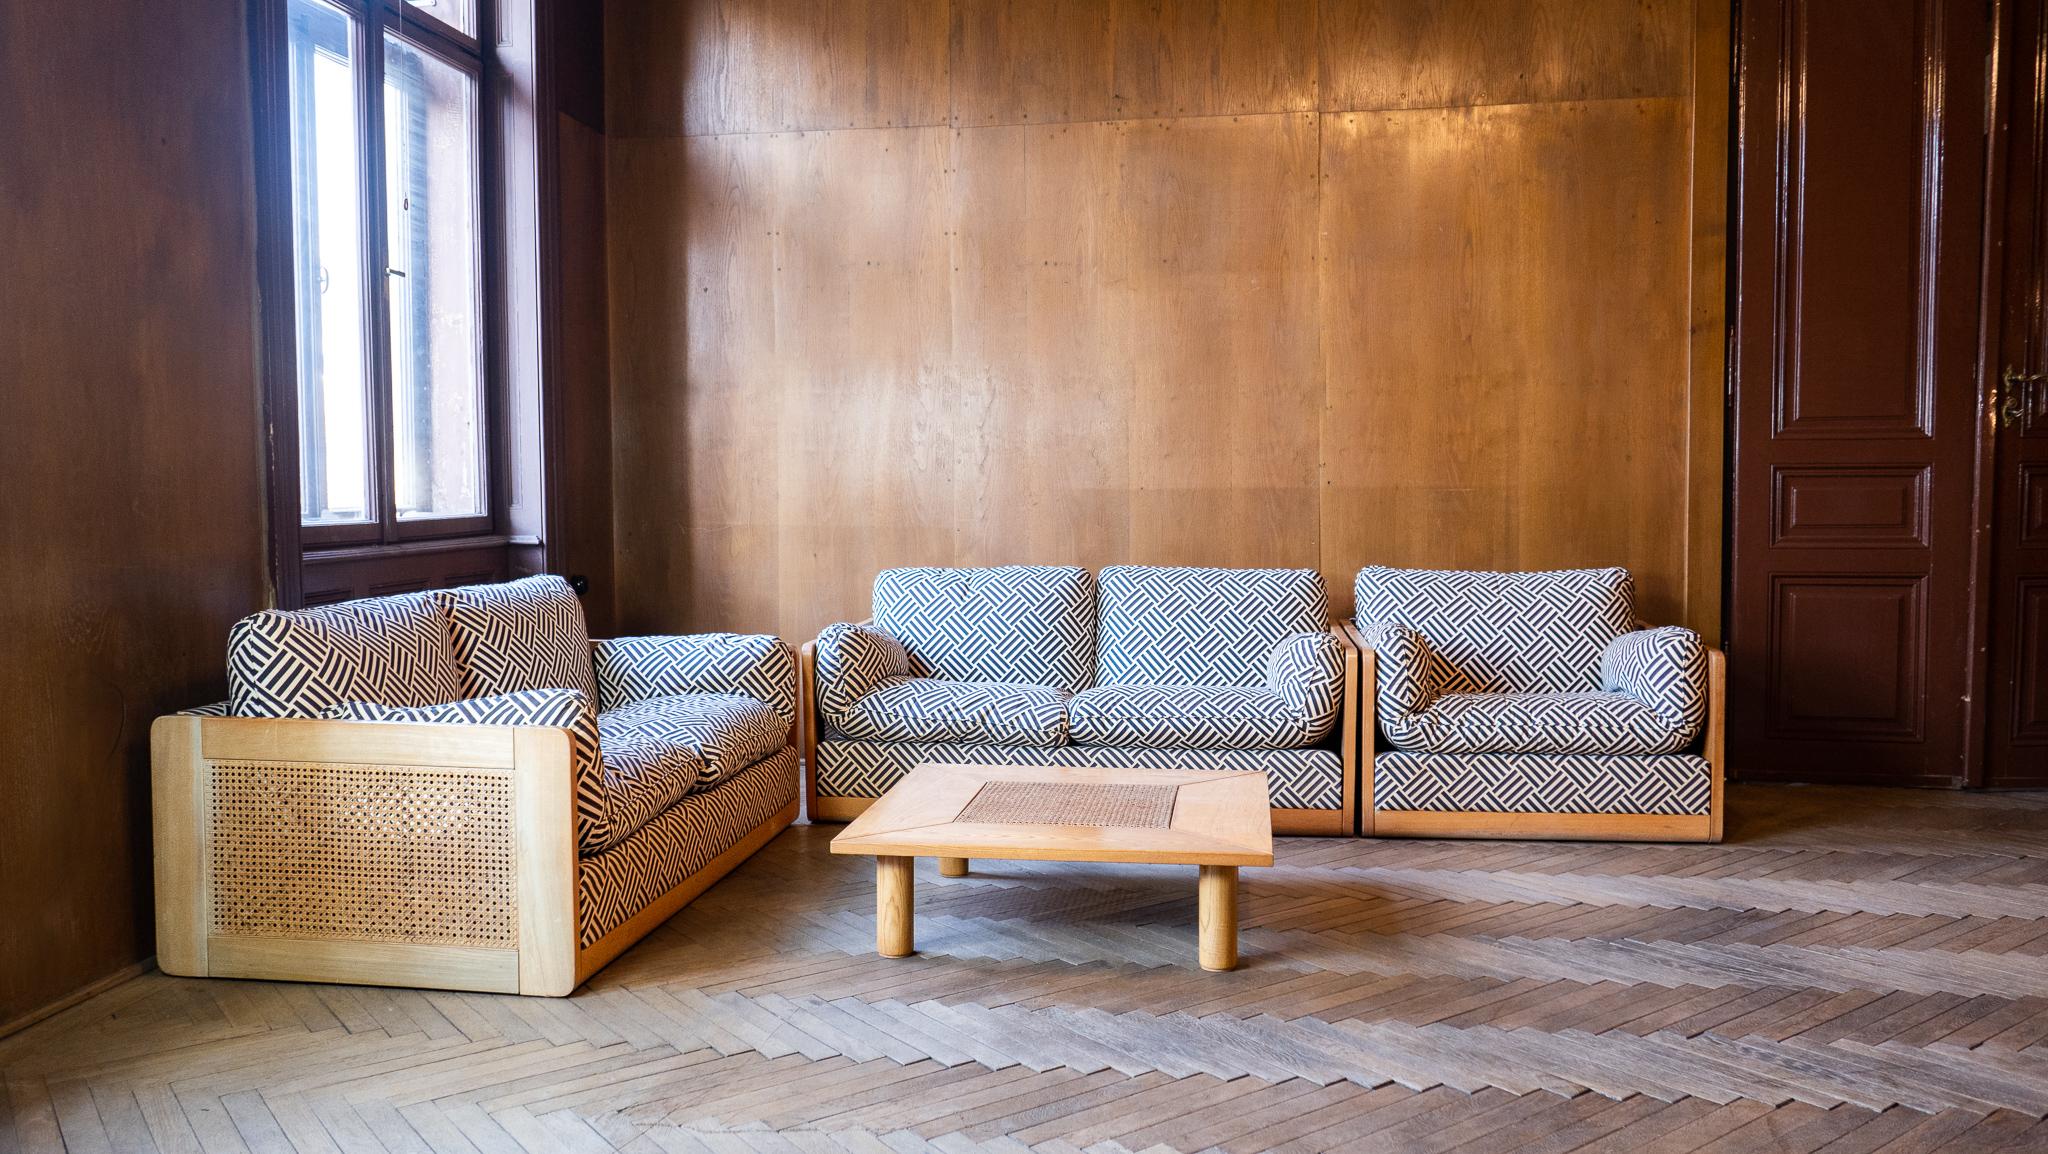 Mid-Century Modern Italien Holz Rattan Set von 2 Sofas und Stuhl, Italien 1970er.

Diese schöne italienische Garnitur aus 2 Zweisitzer-Sofas, 1 Sessel und 1 Couchtisch aus Birke und Rattan - auch Wiener Stroh genannt - mit dicker Polsterung lädt den